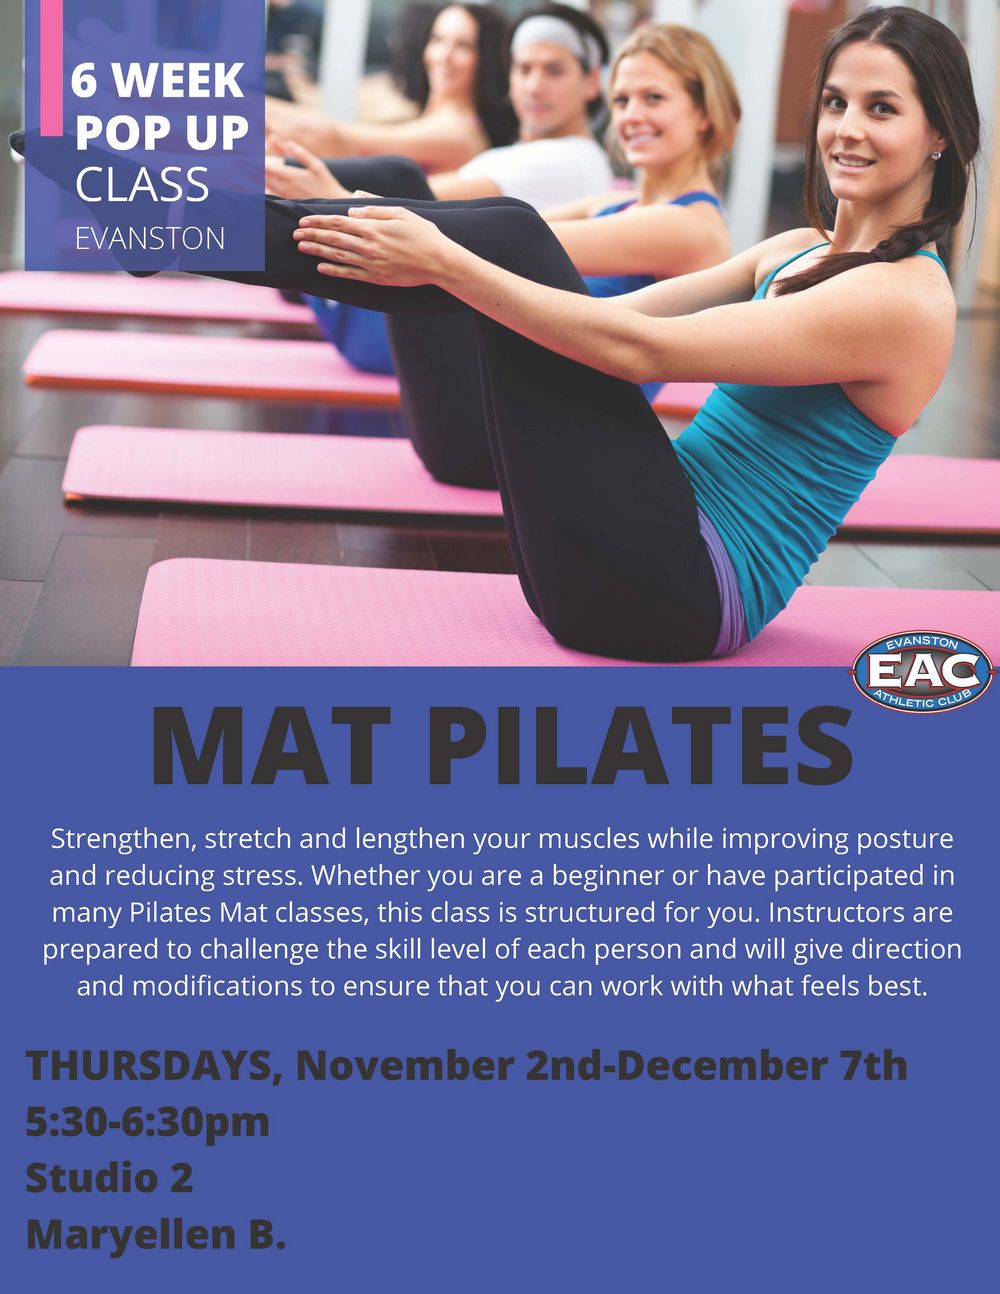 EAC Pop Up: Mat Pilates 6 Week Pop Up